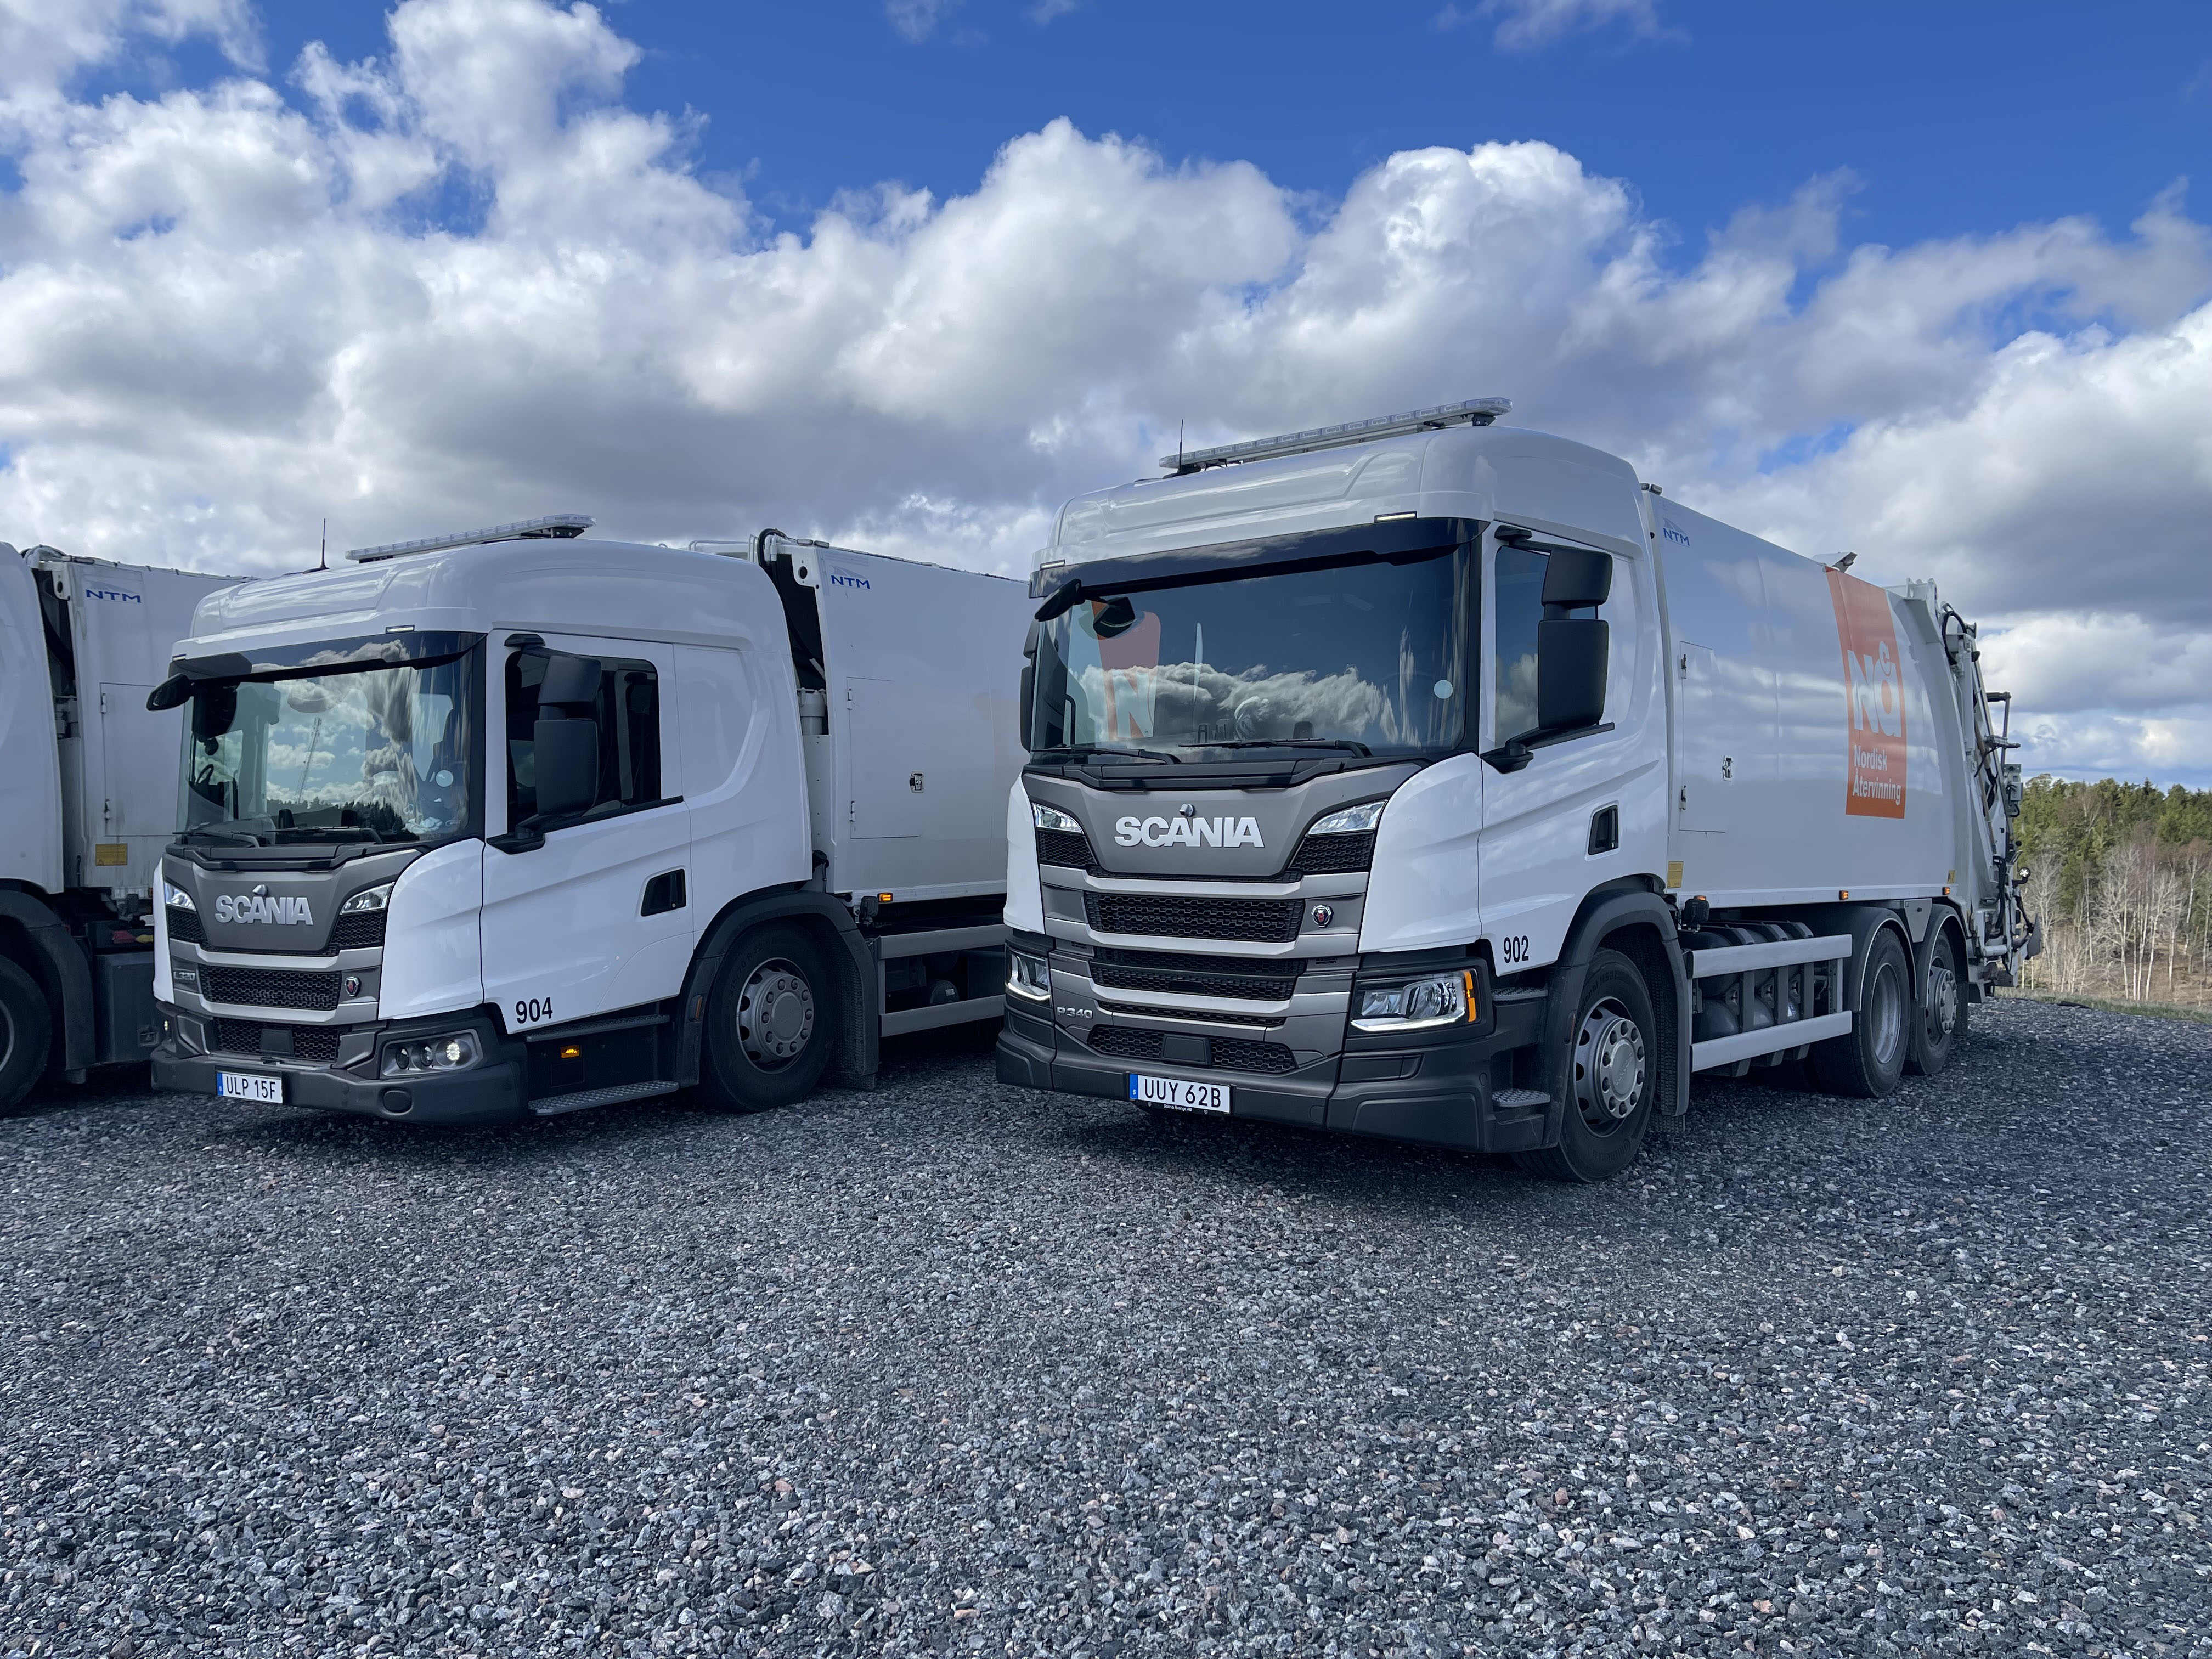 Una empresa sueca de gestión de residuos y reciclaje repite y amplía su flota con camiones equipados con cajas automáticas Allison